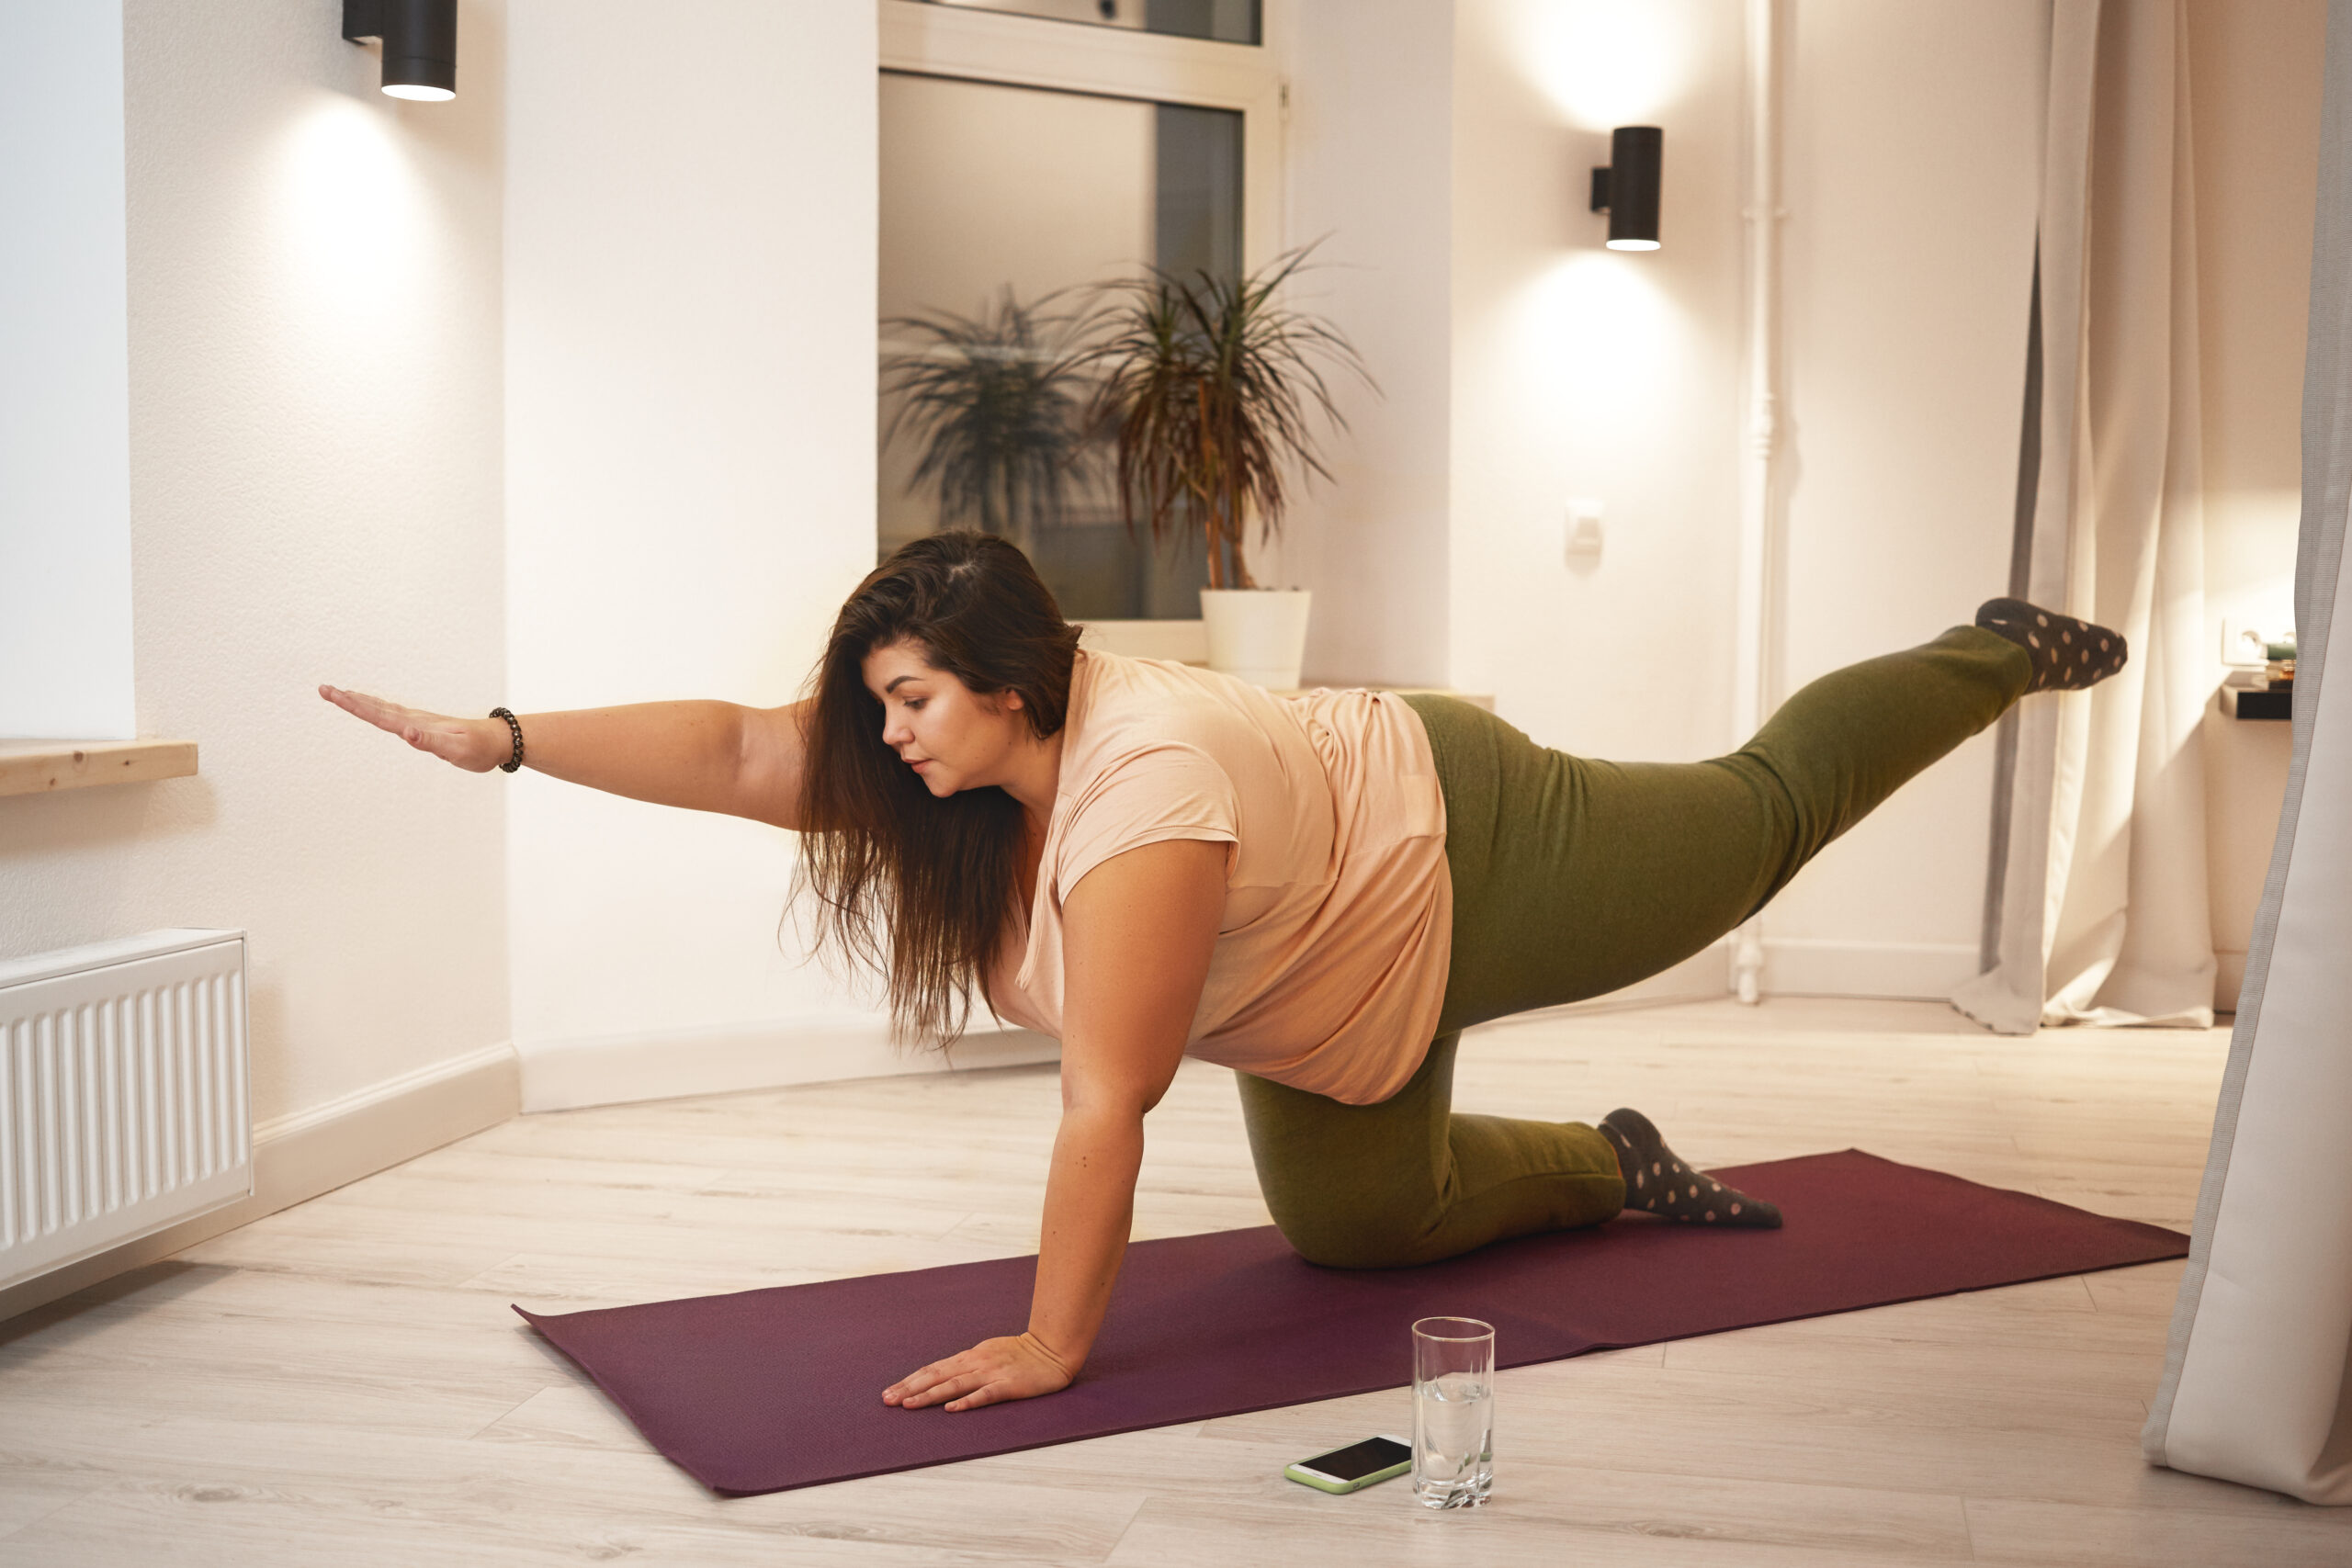 Mulher praticando yoga em sua casa, fortalecendo um hábito saudável.